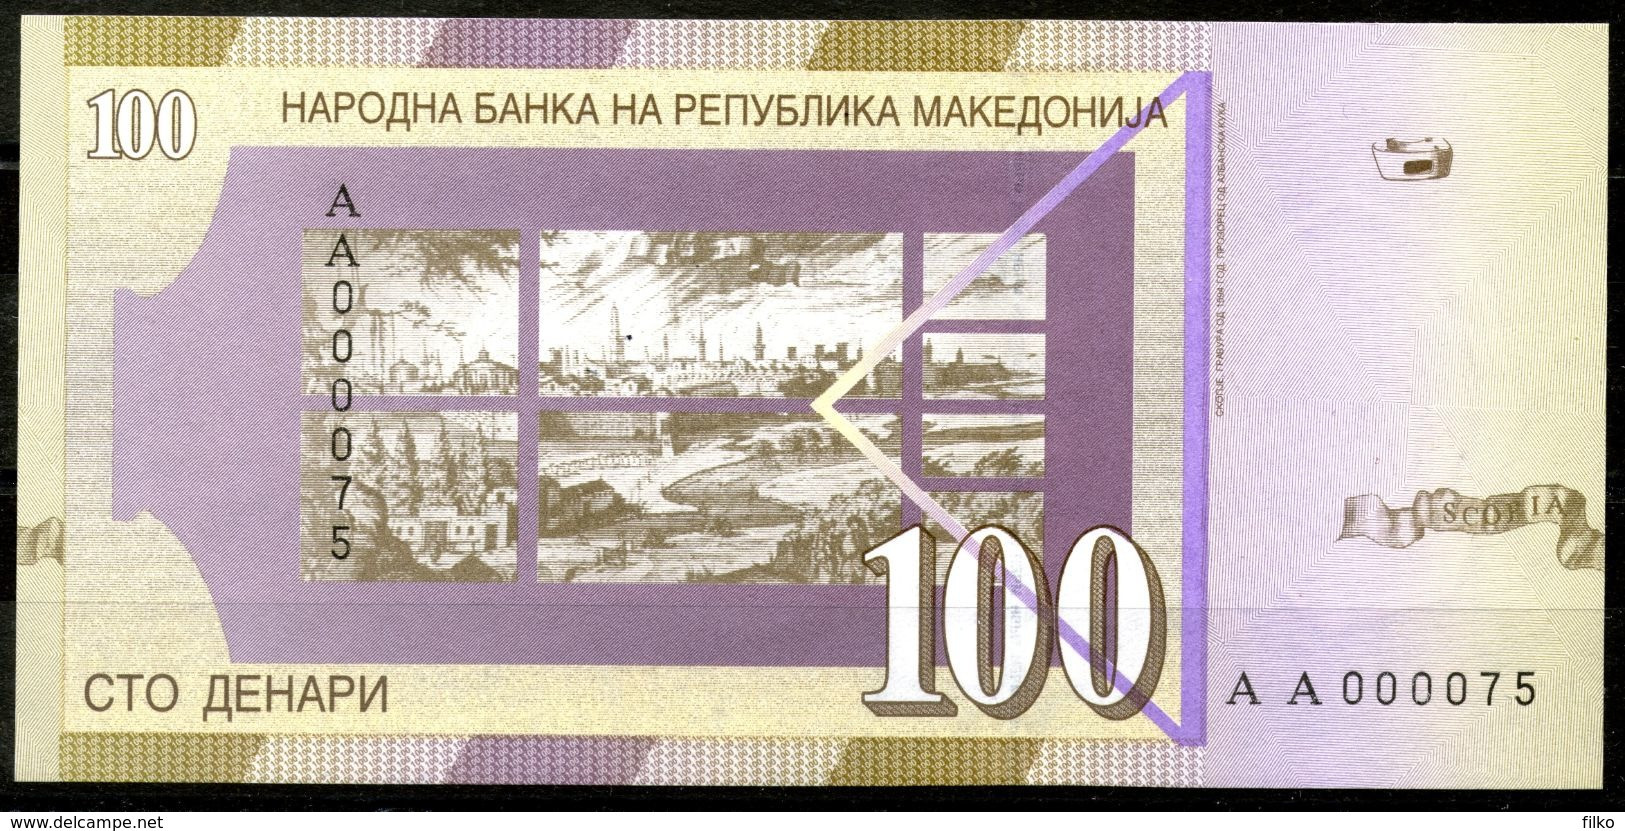 Macedonia 100 Denari 2000,commemorativ Banknote Limited Edition,low Serial No.AA000075,as Scan - North Macedonia